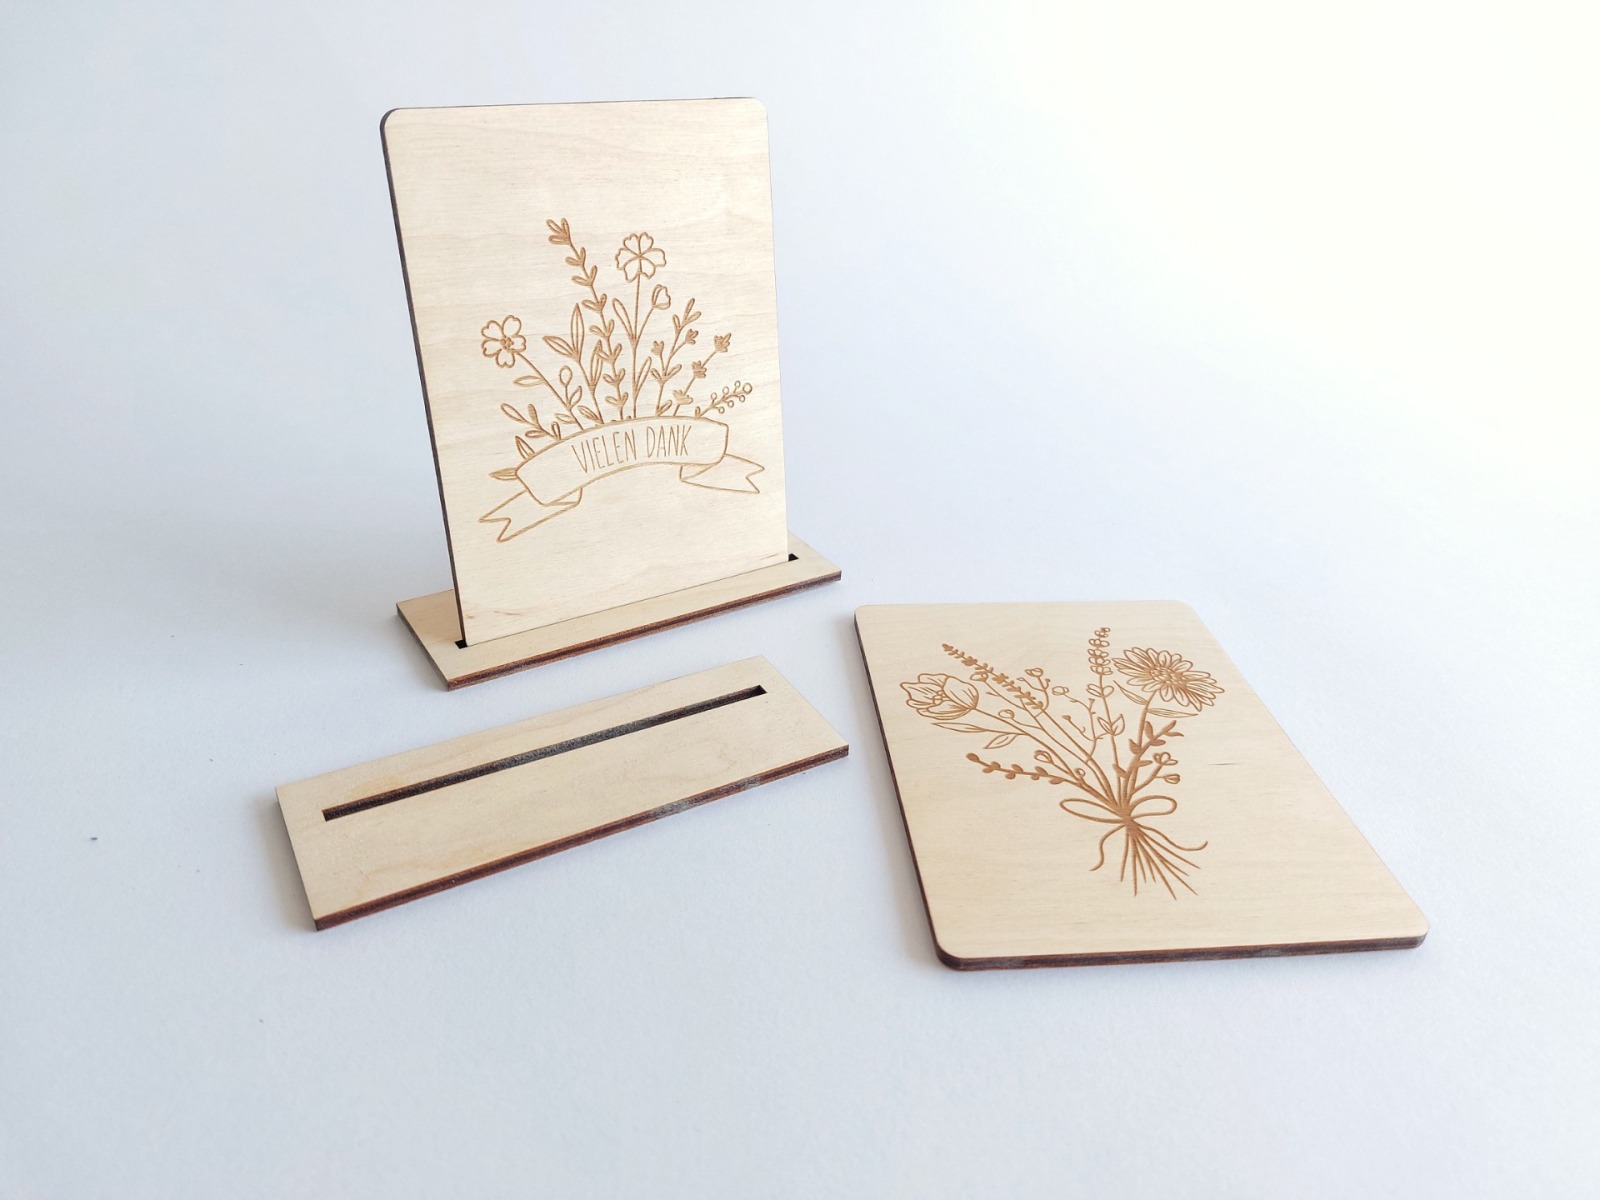 Holzkarte mit Blumen Motiv - Danke Blumen - Holz Postkarten Format - Grußkarten aus Holz Erinnerungskarte Muttertag Besondere Karte 5